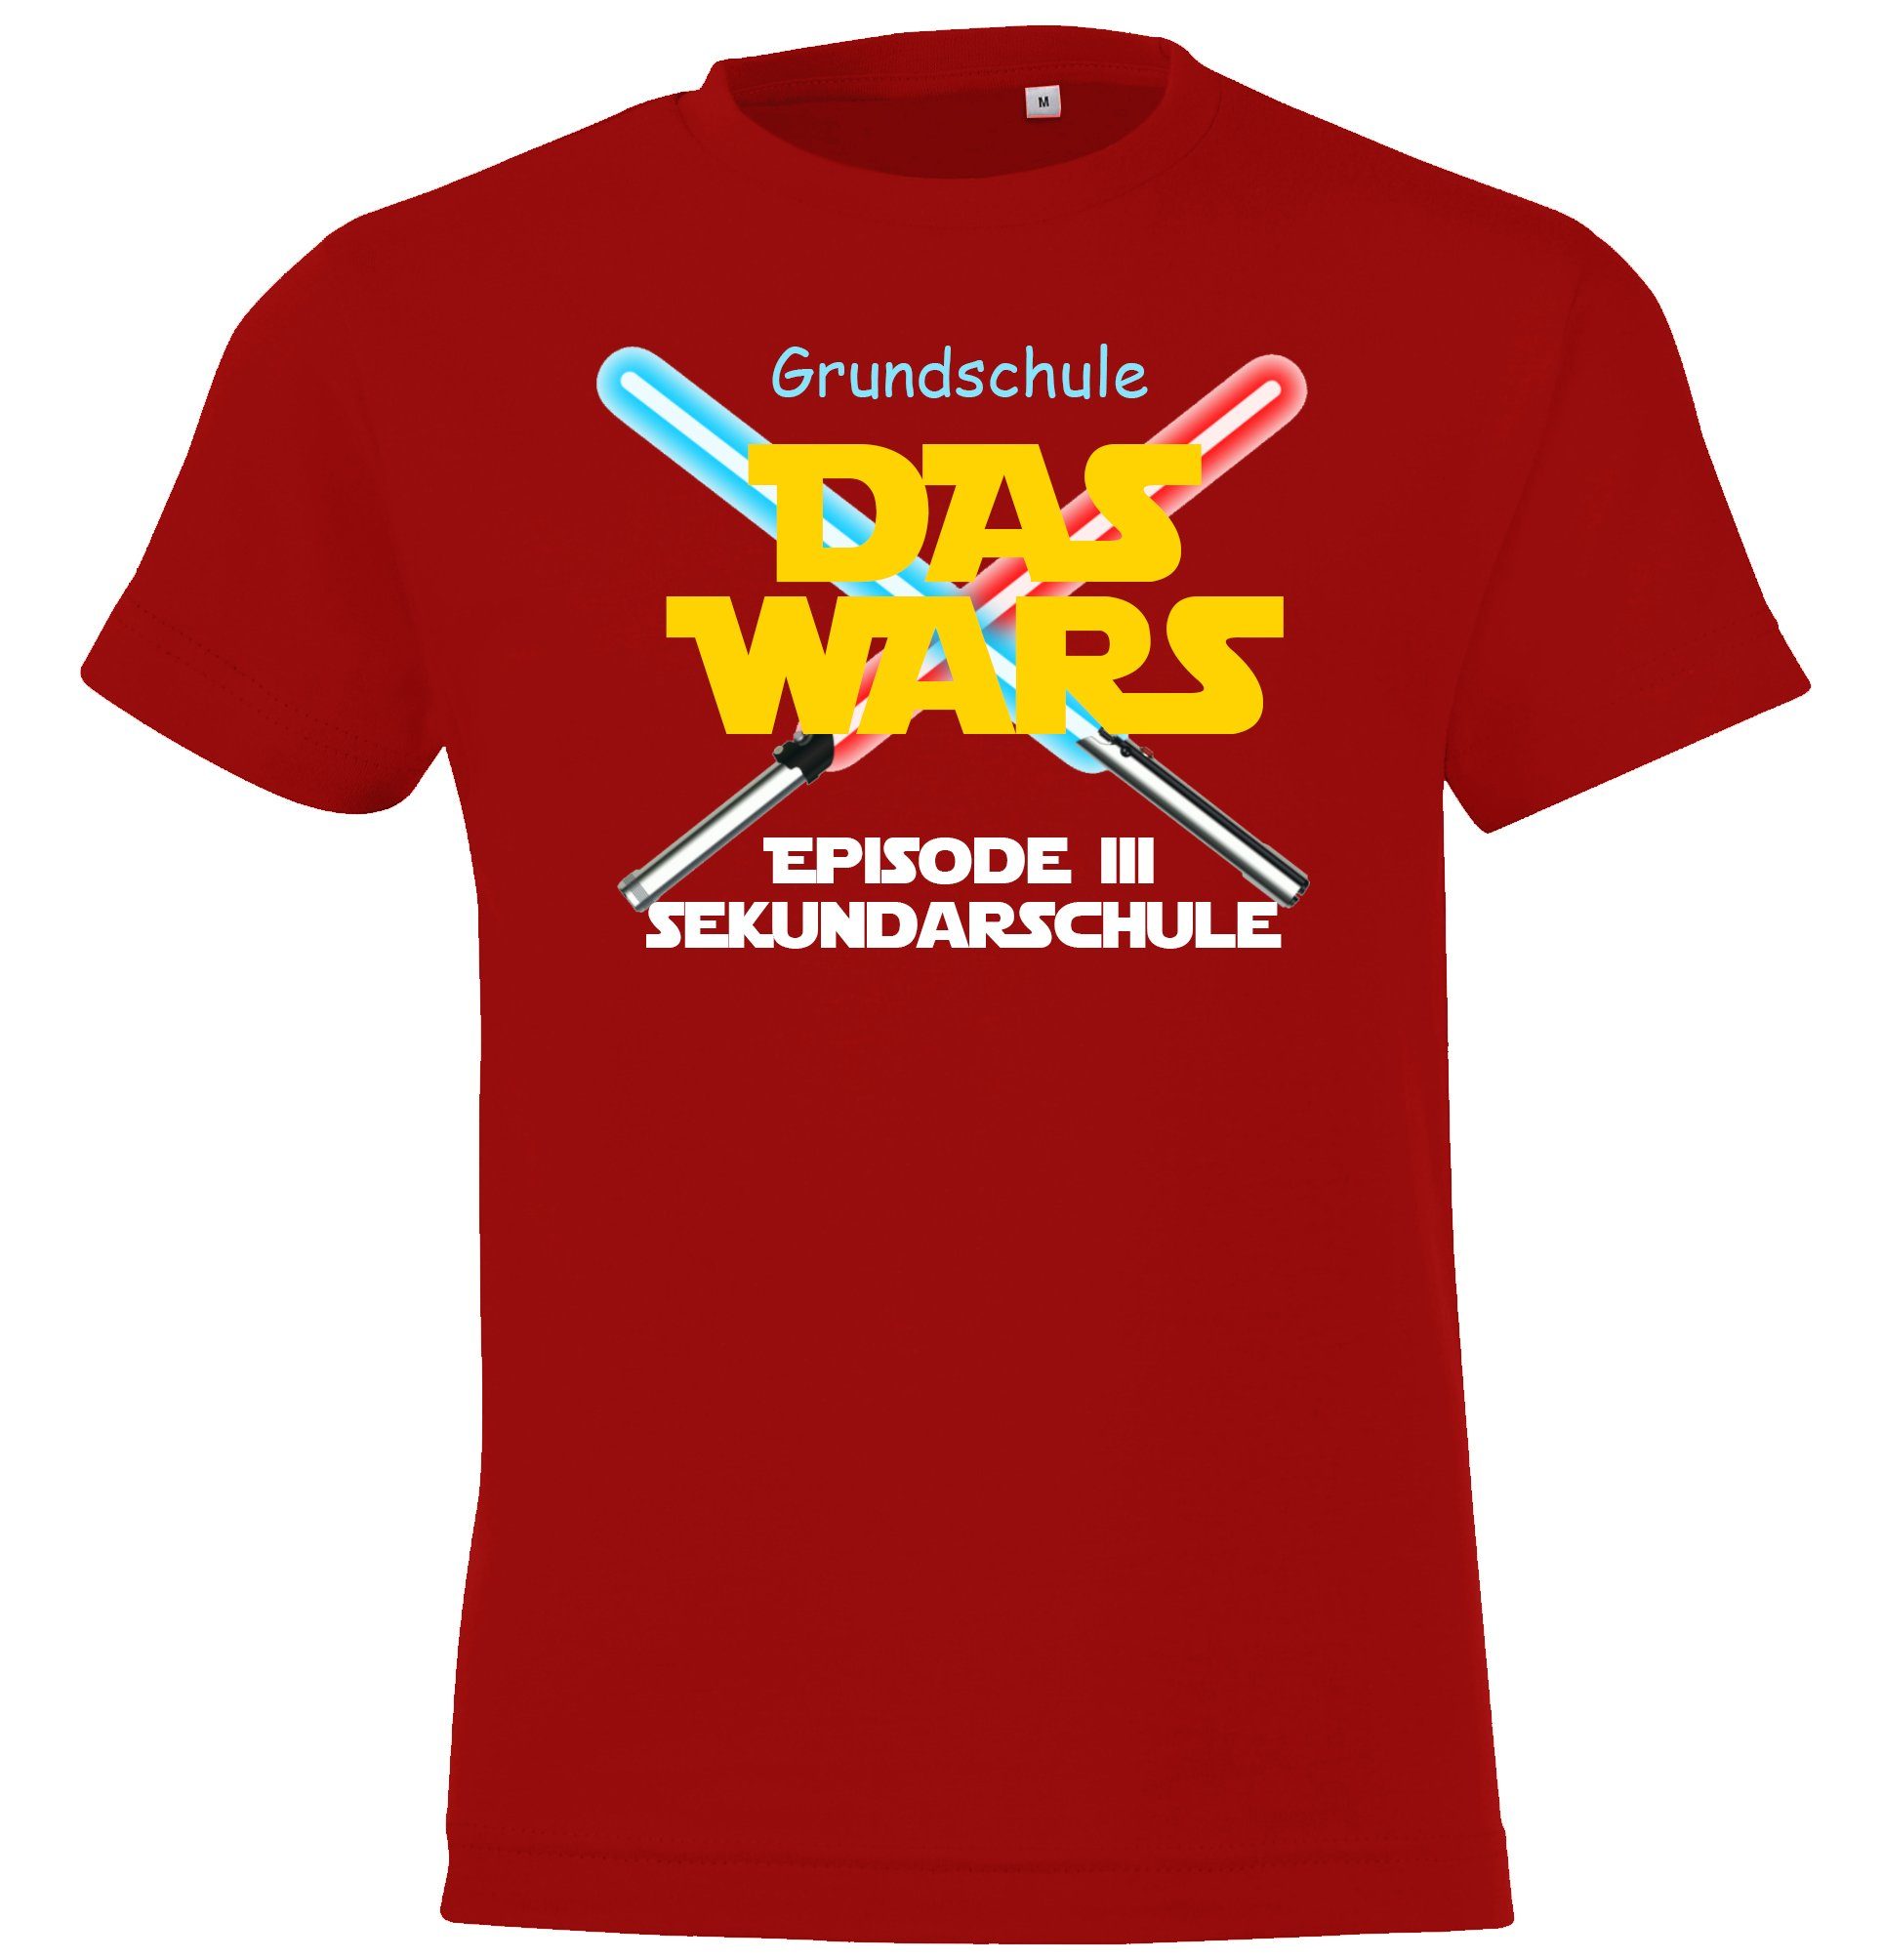 mit Grundschule Youth T-Shirt Schulzeit Das Wars Designz lustigem der Shirt Motiv Rot Kinder